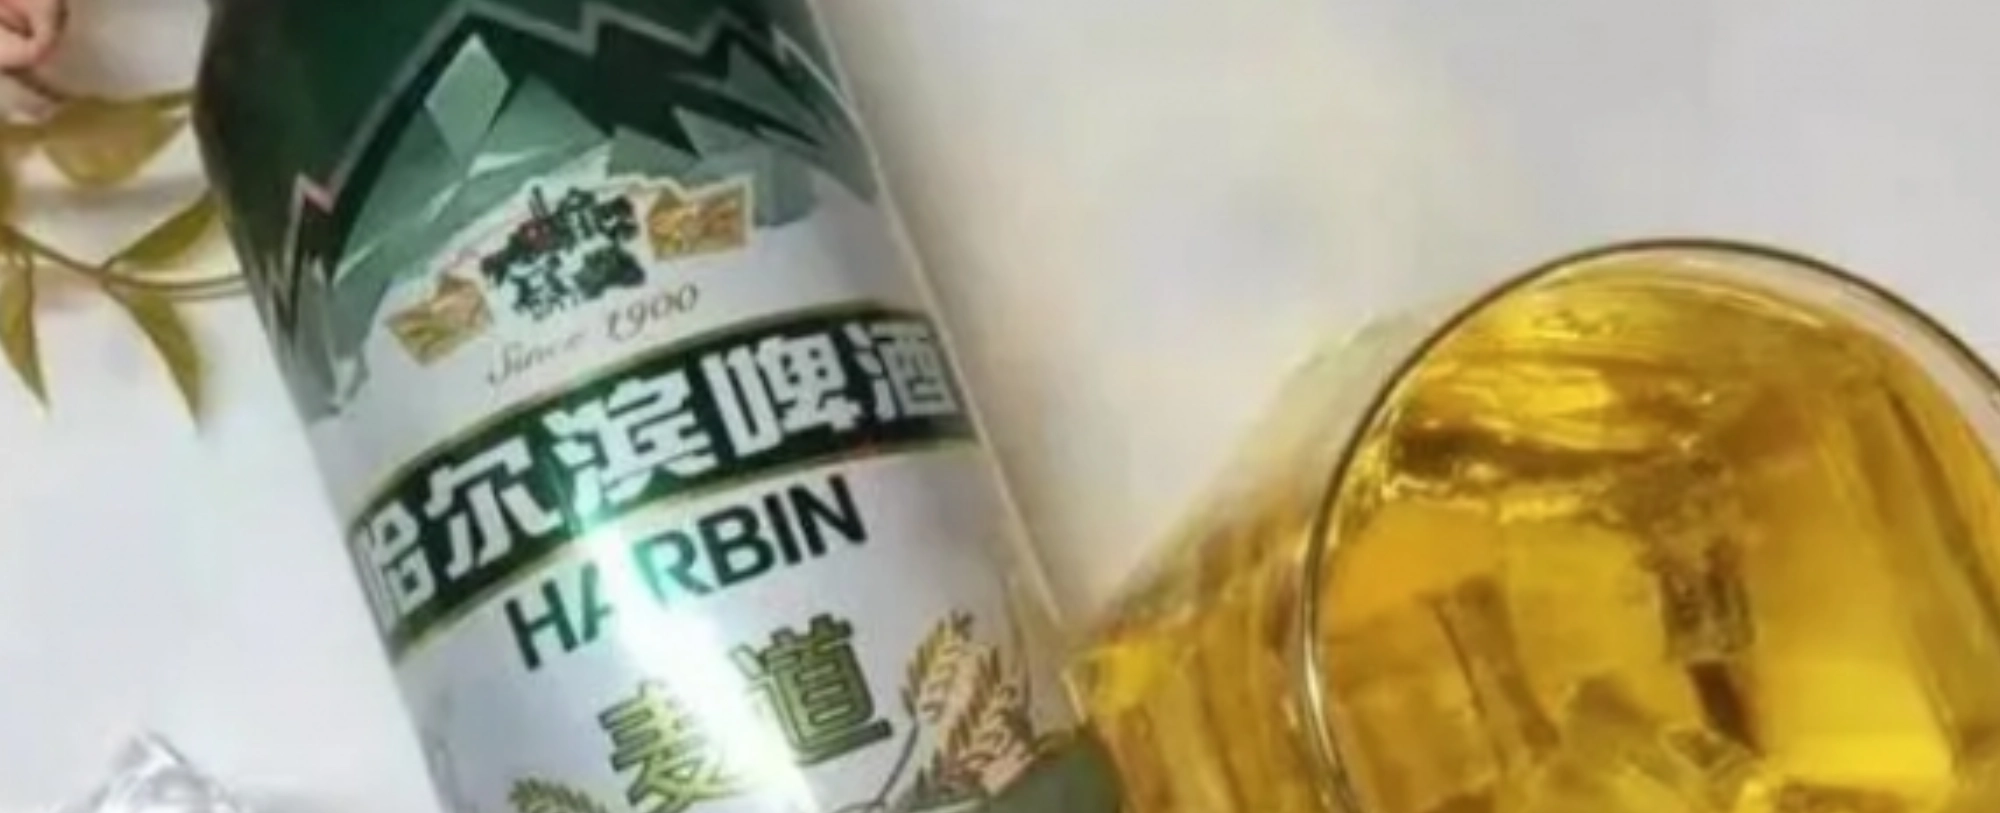 [뉴스숏]중국 맥주 또 논란…소변 이어 이번엔 곰팡이 파문 